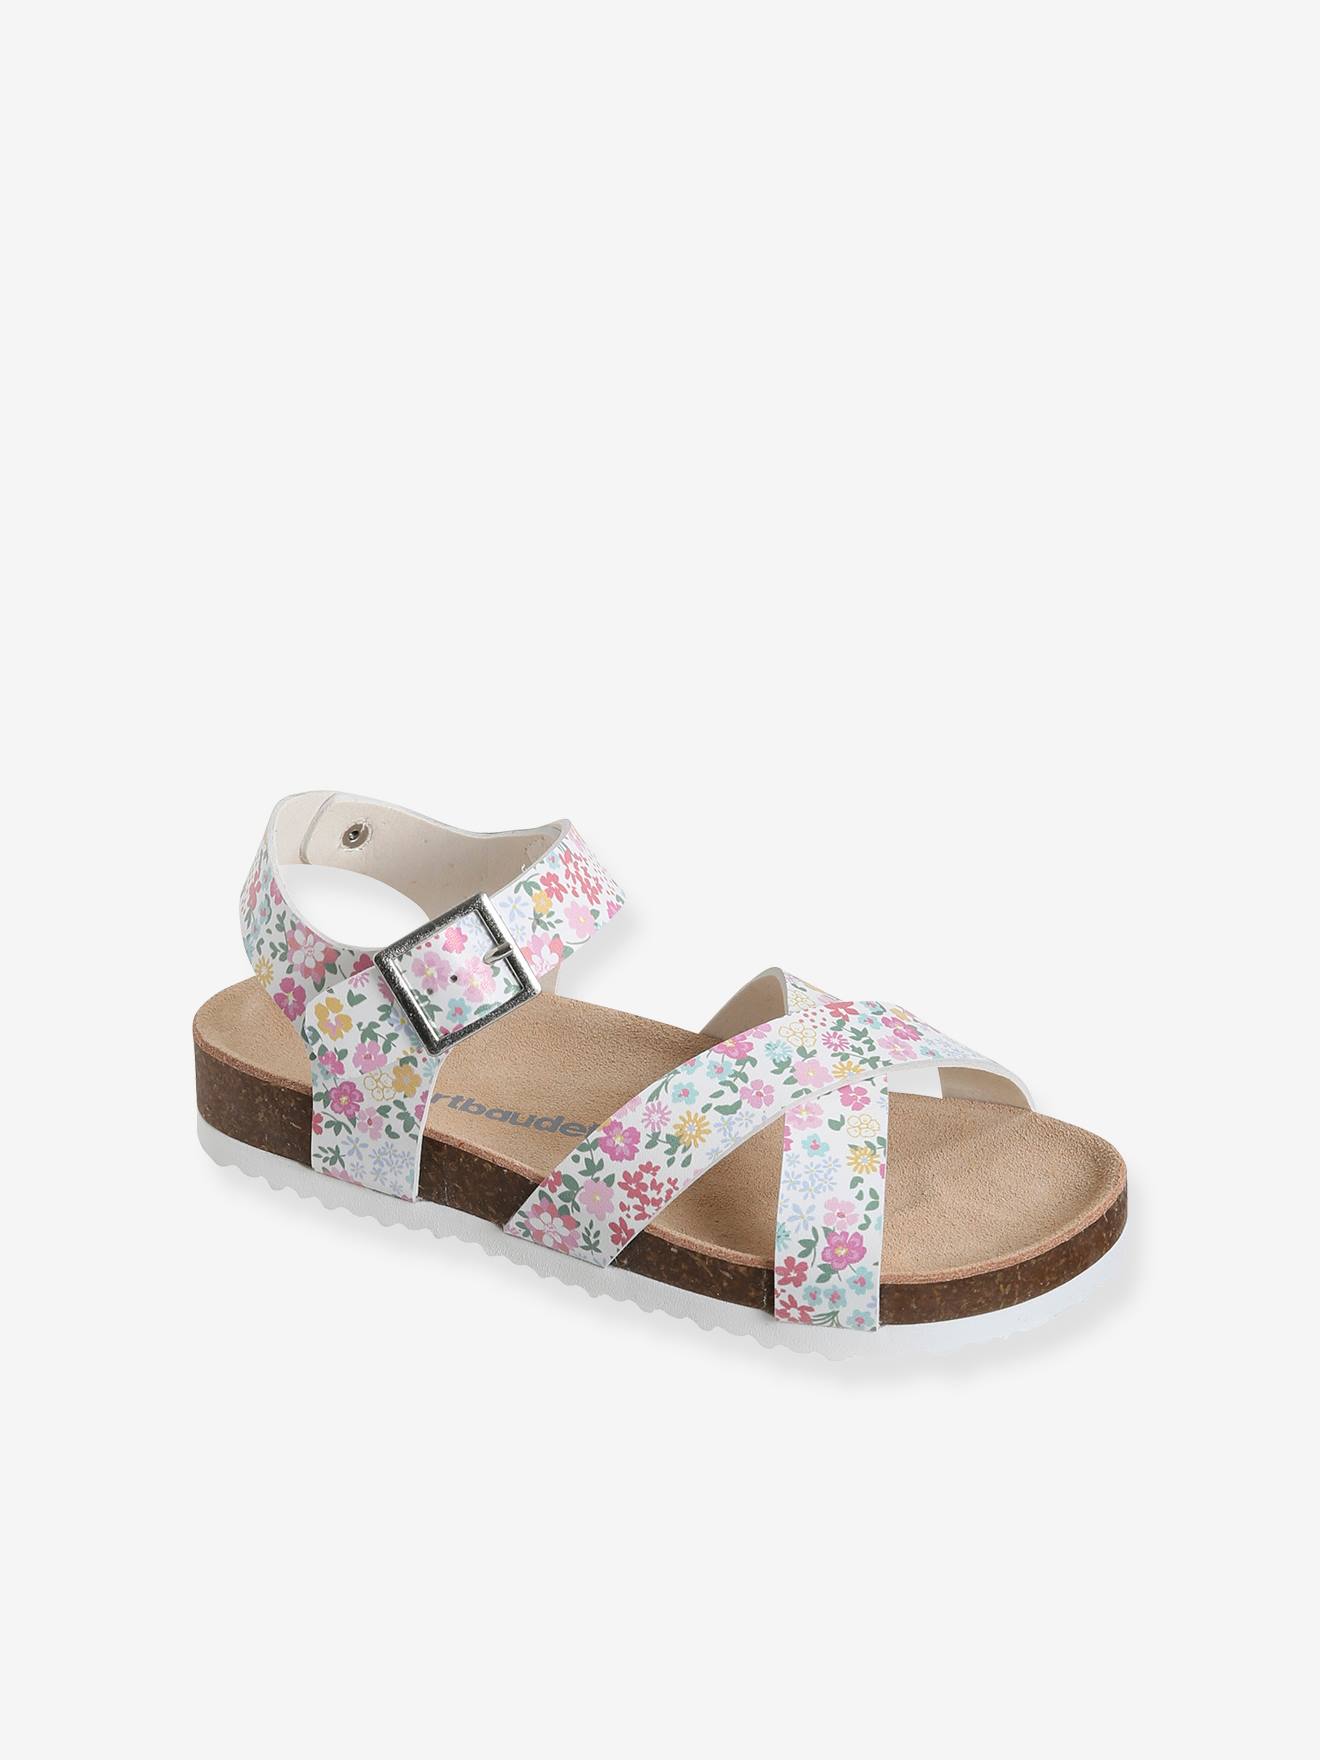 Bedrukte sandalen voor meisjes kleurrijke bloemen